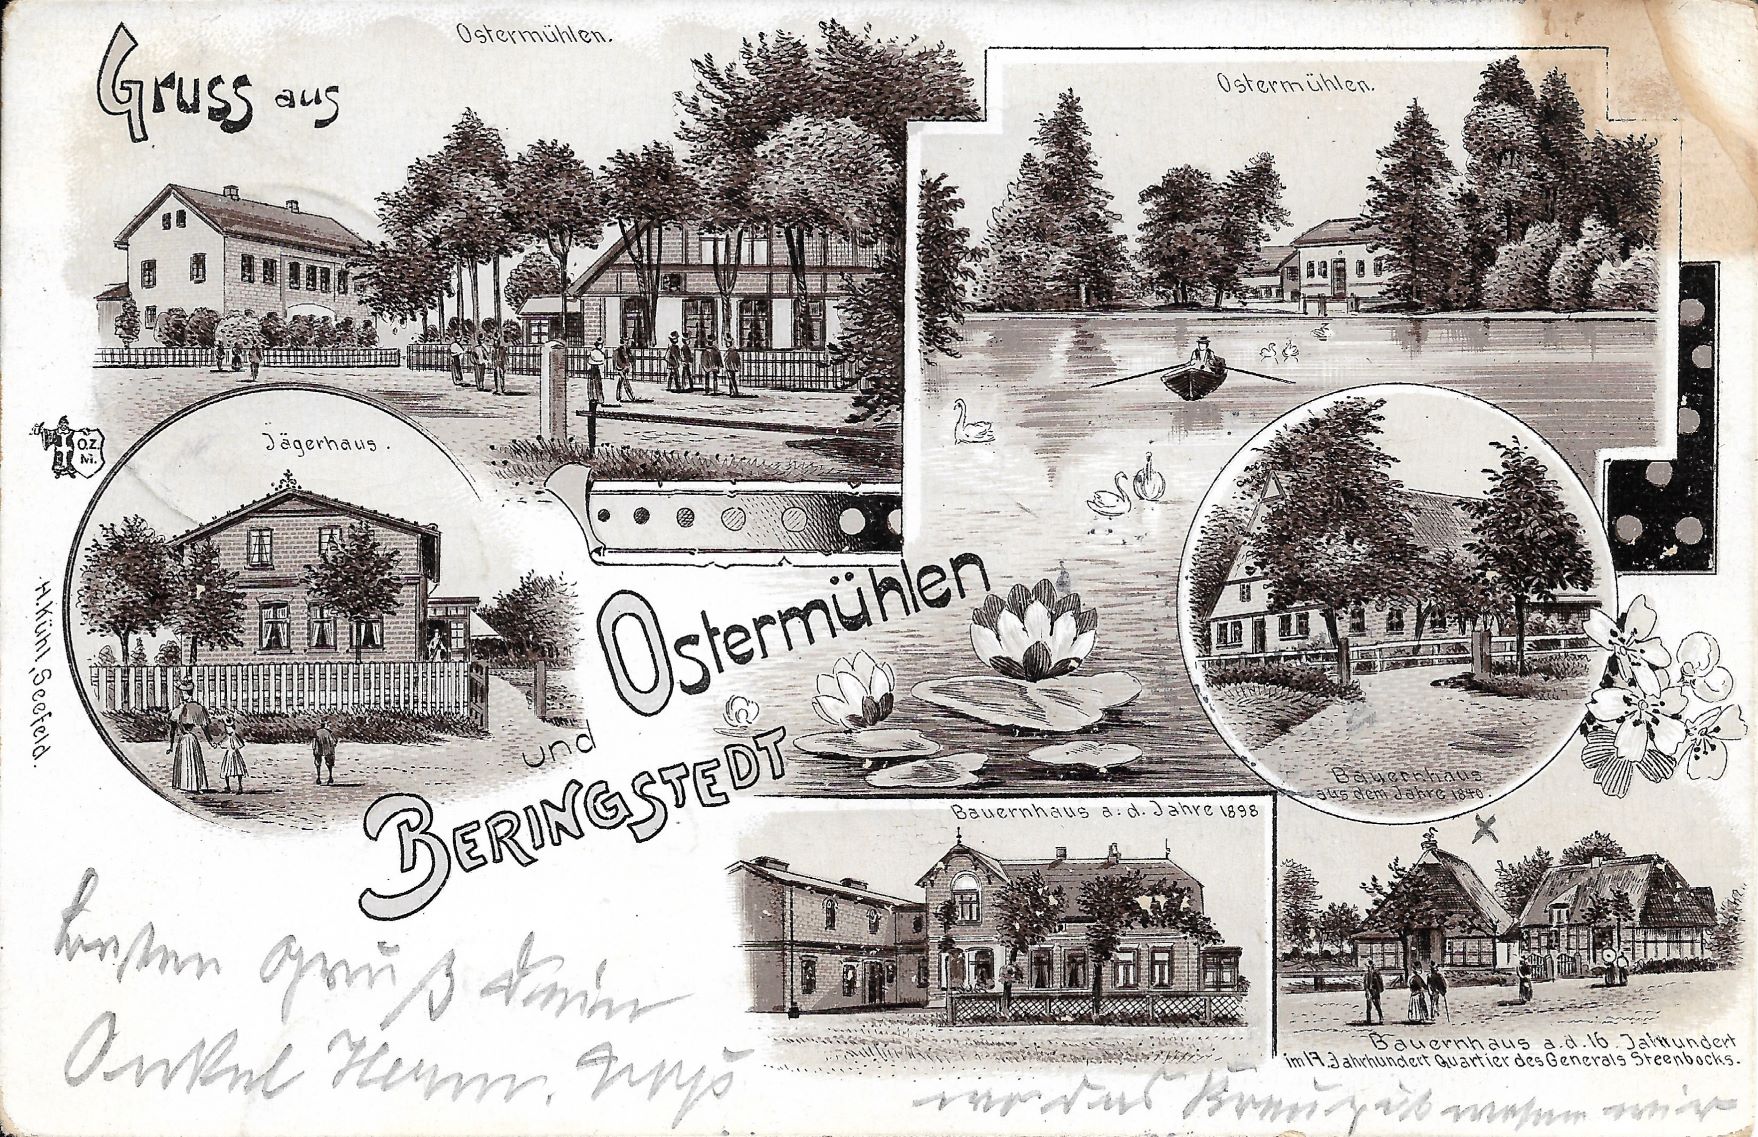 Postkarte von 1905 für website